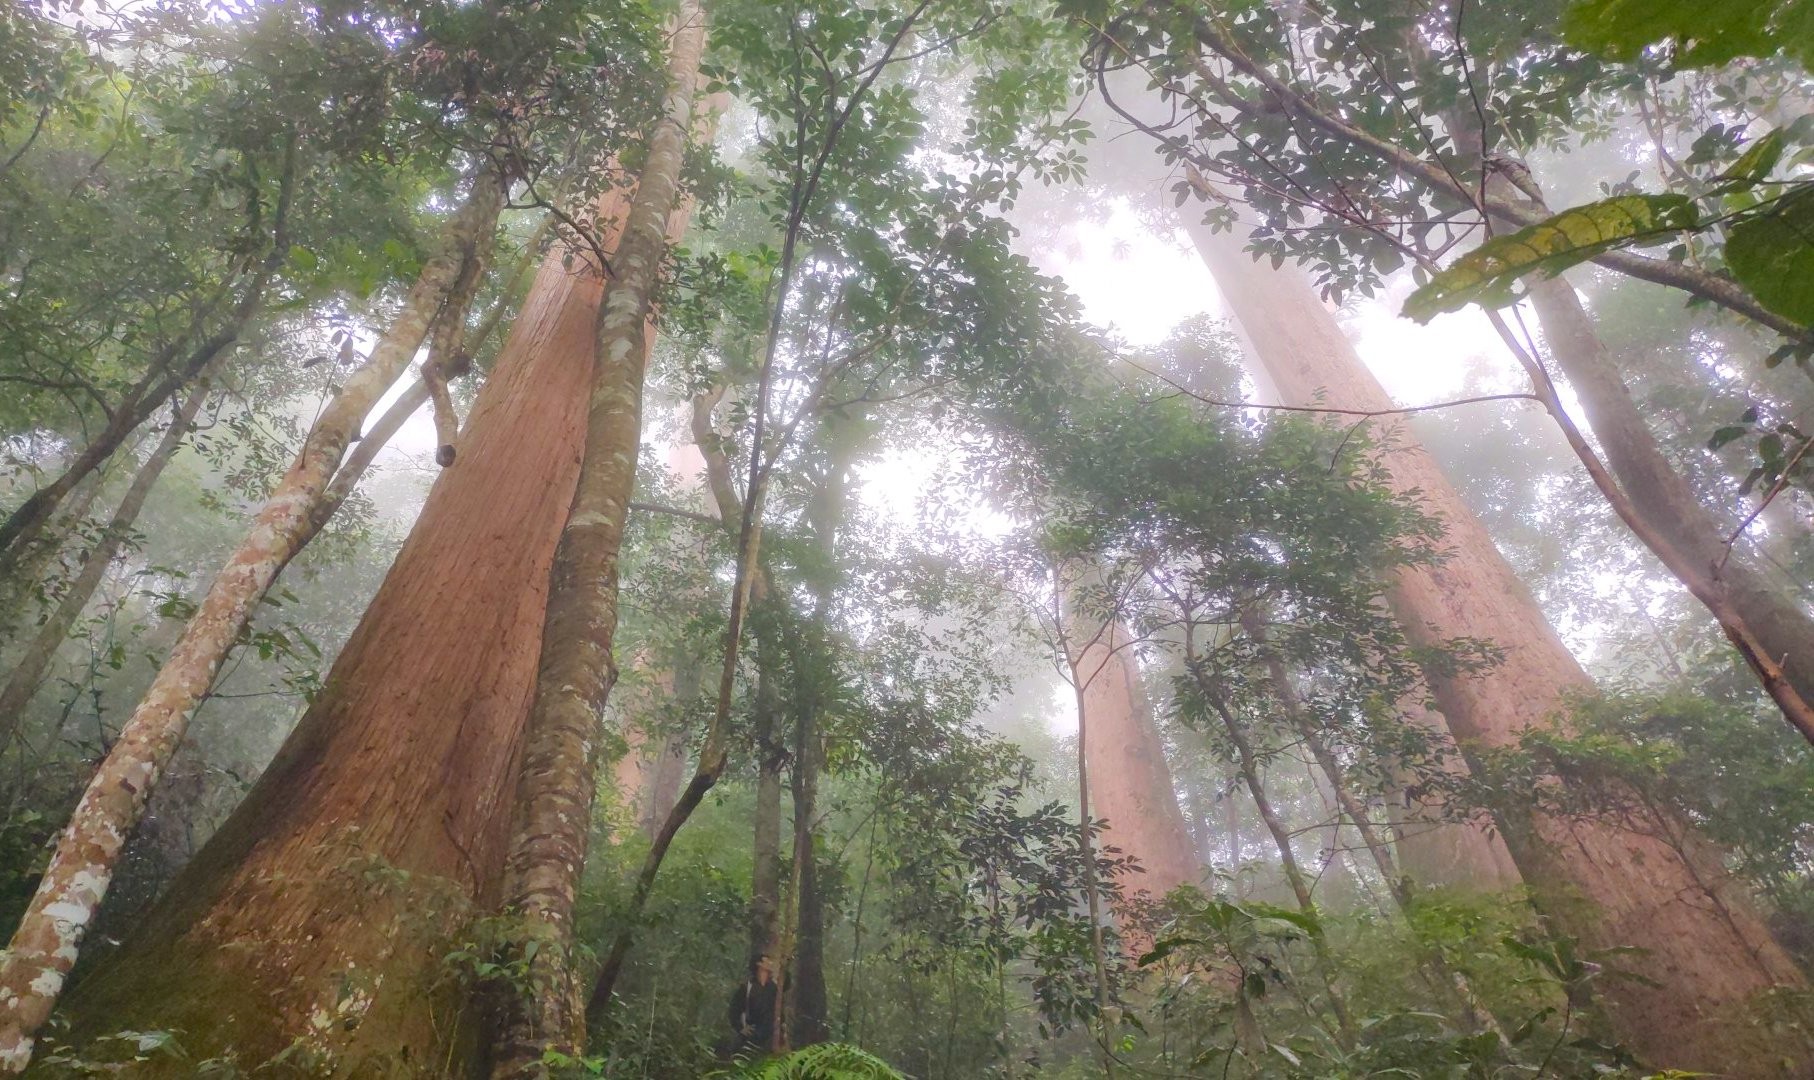 Ngắm cổ thụ Sa mu dầu hơn 2.000 tuổi trong lõi rừng già, được công nhận là cây di sản Việt Nam - Ảnh 5.